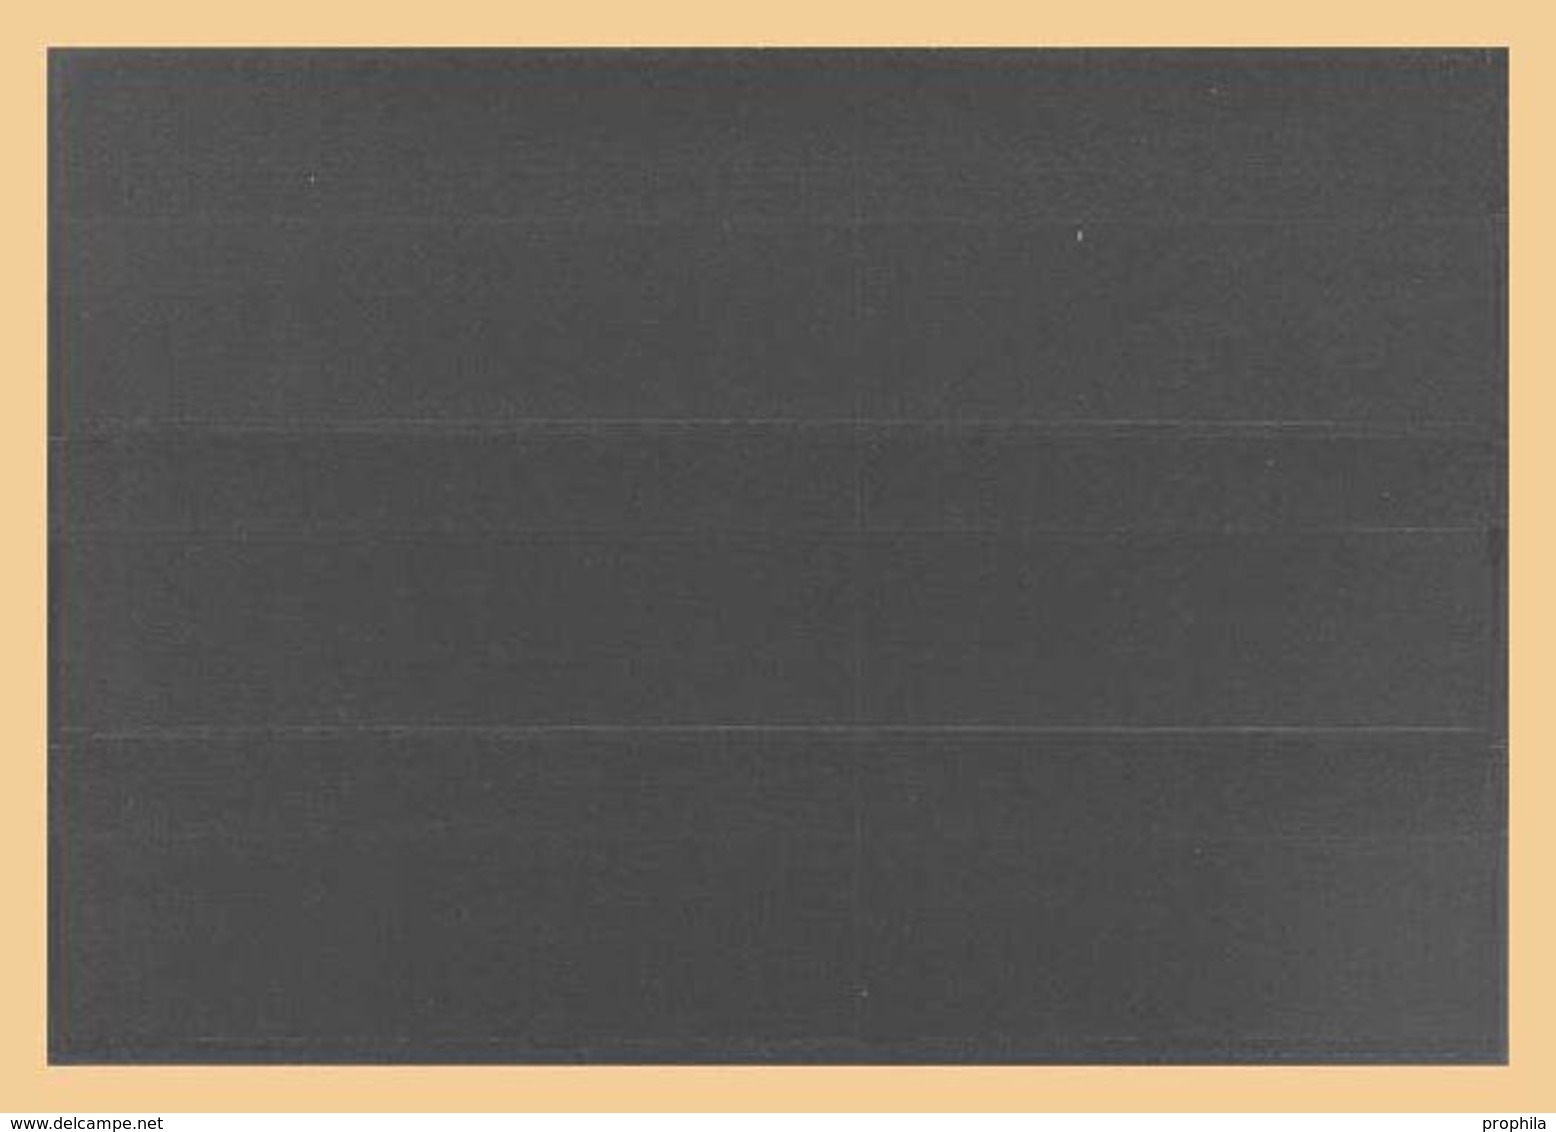 100x KOBRA-Einsteckkarten, Grau Rückseite Nr. K3G - Cartes De Stockage